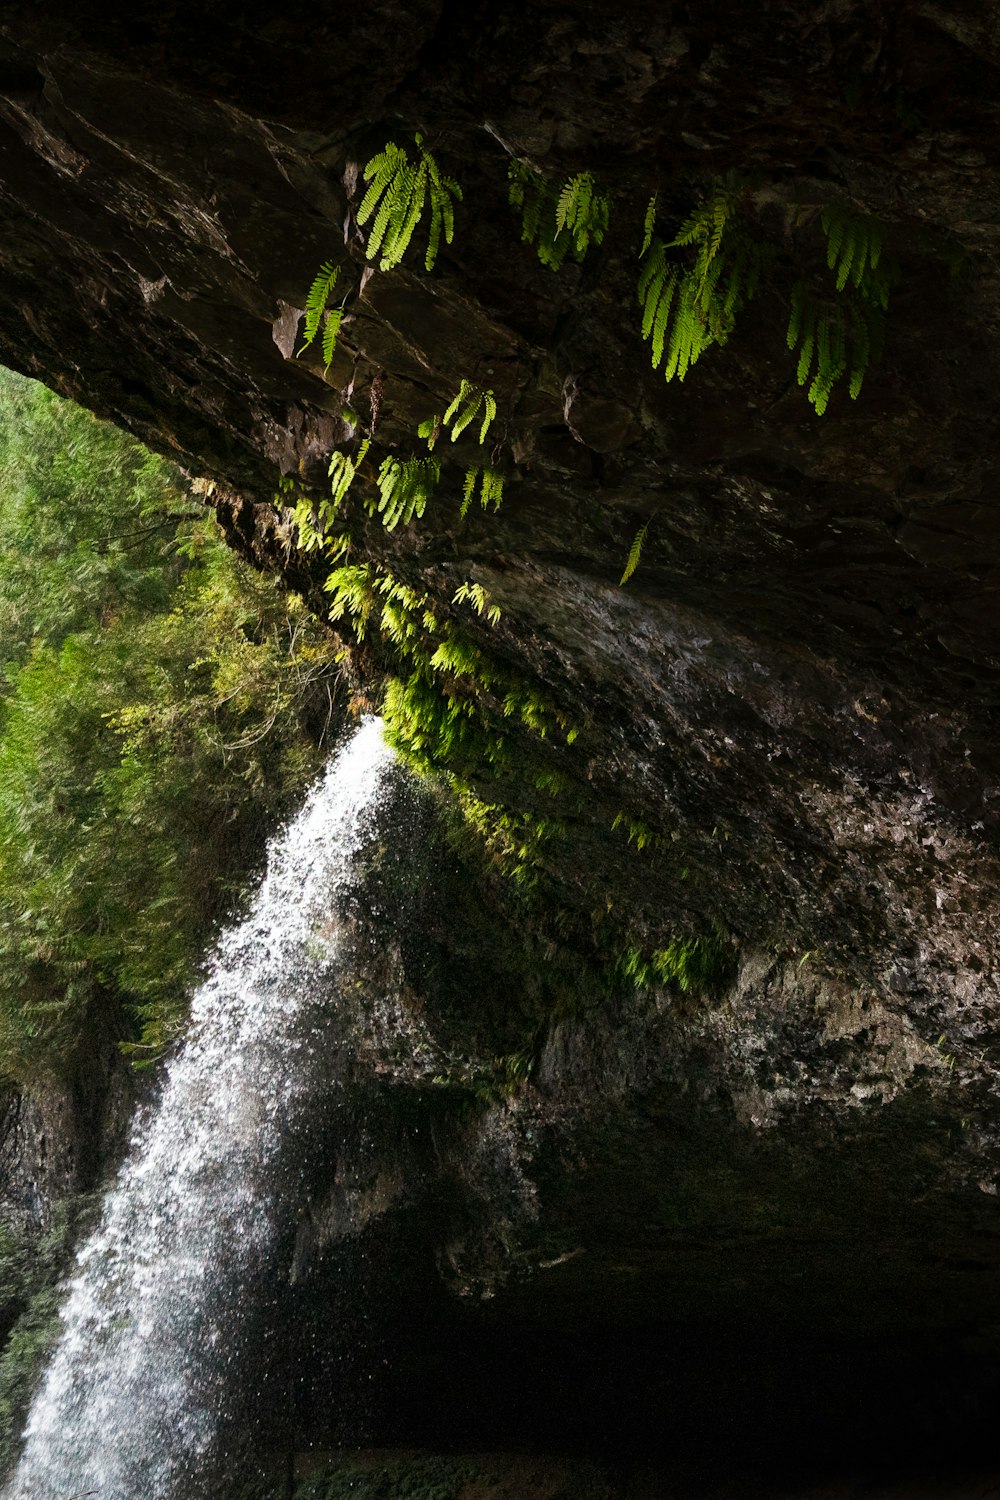 Une petite cascade sort d’une grotte